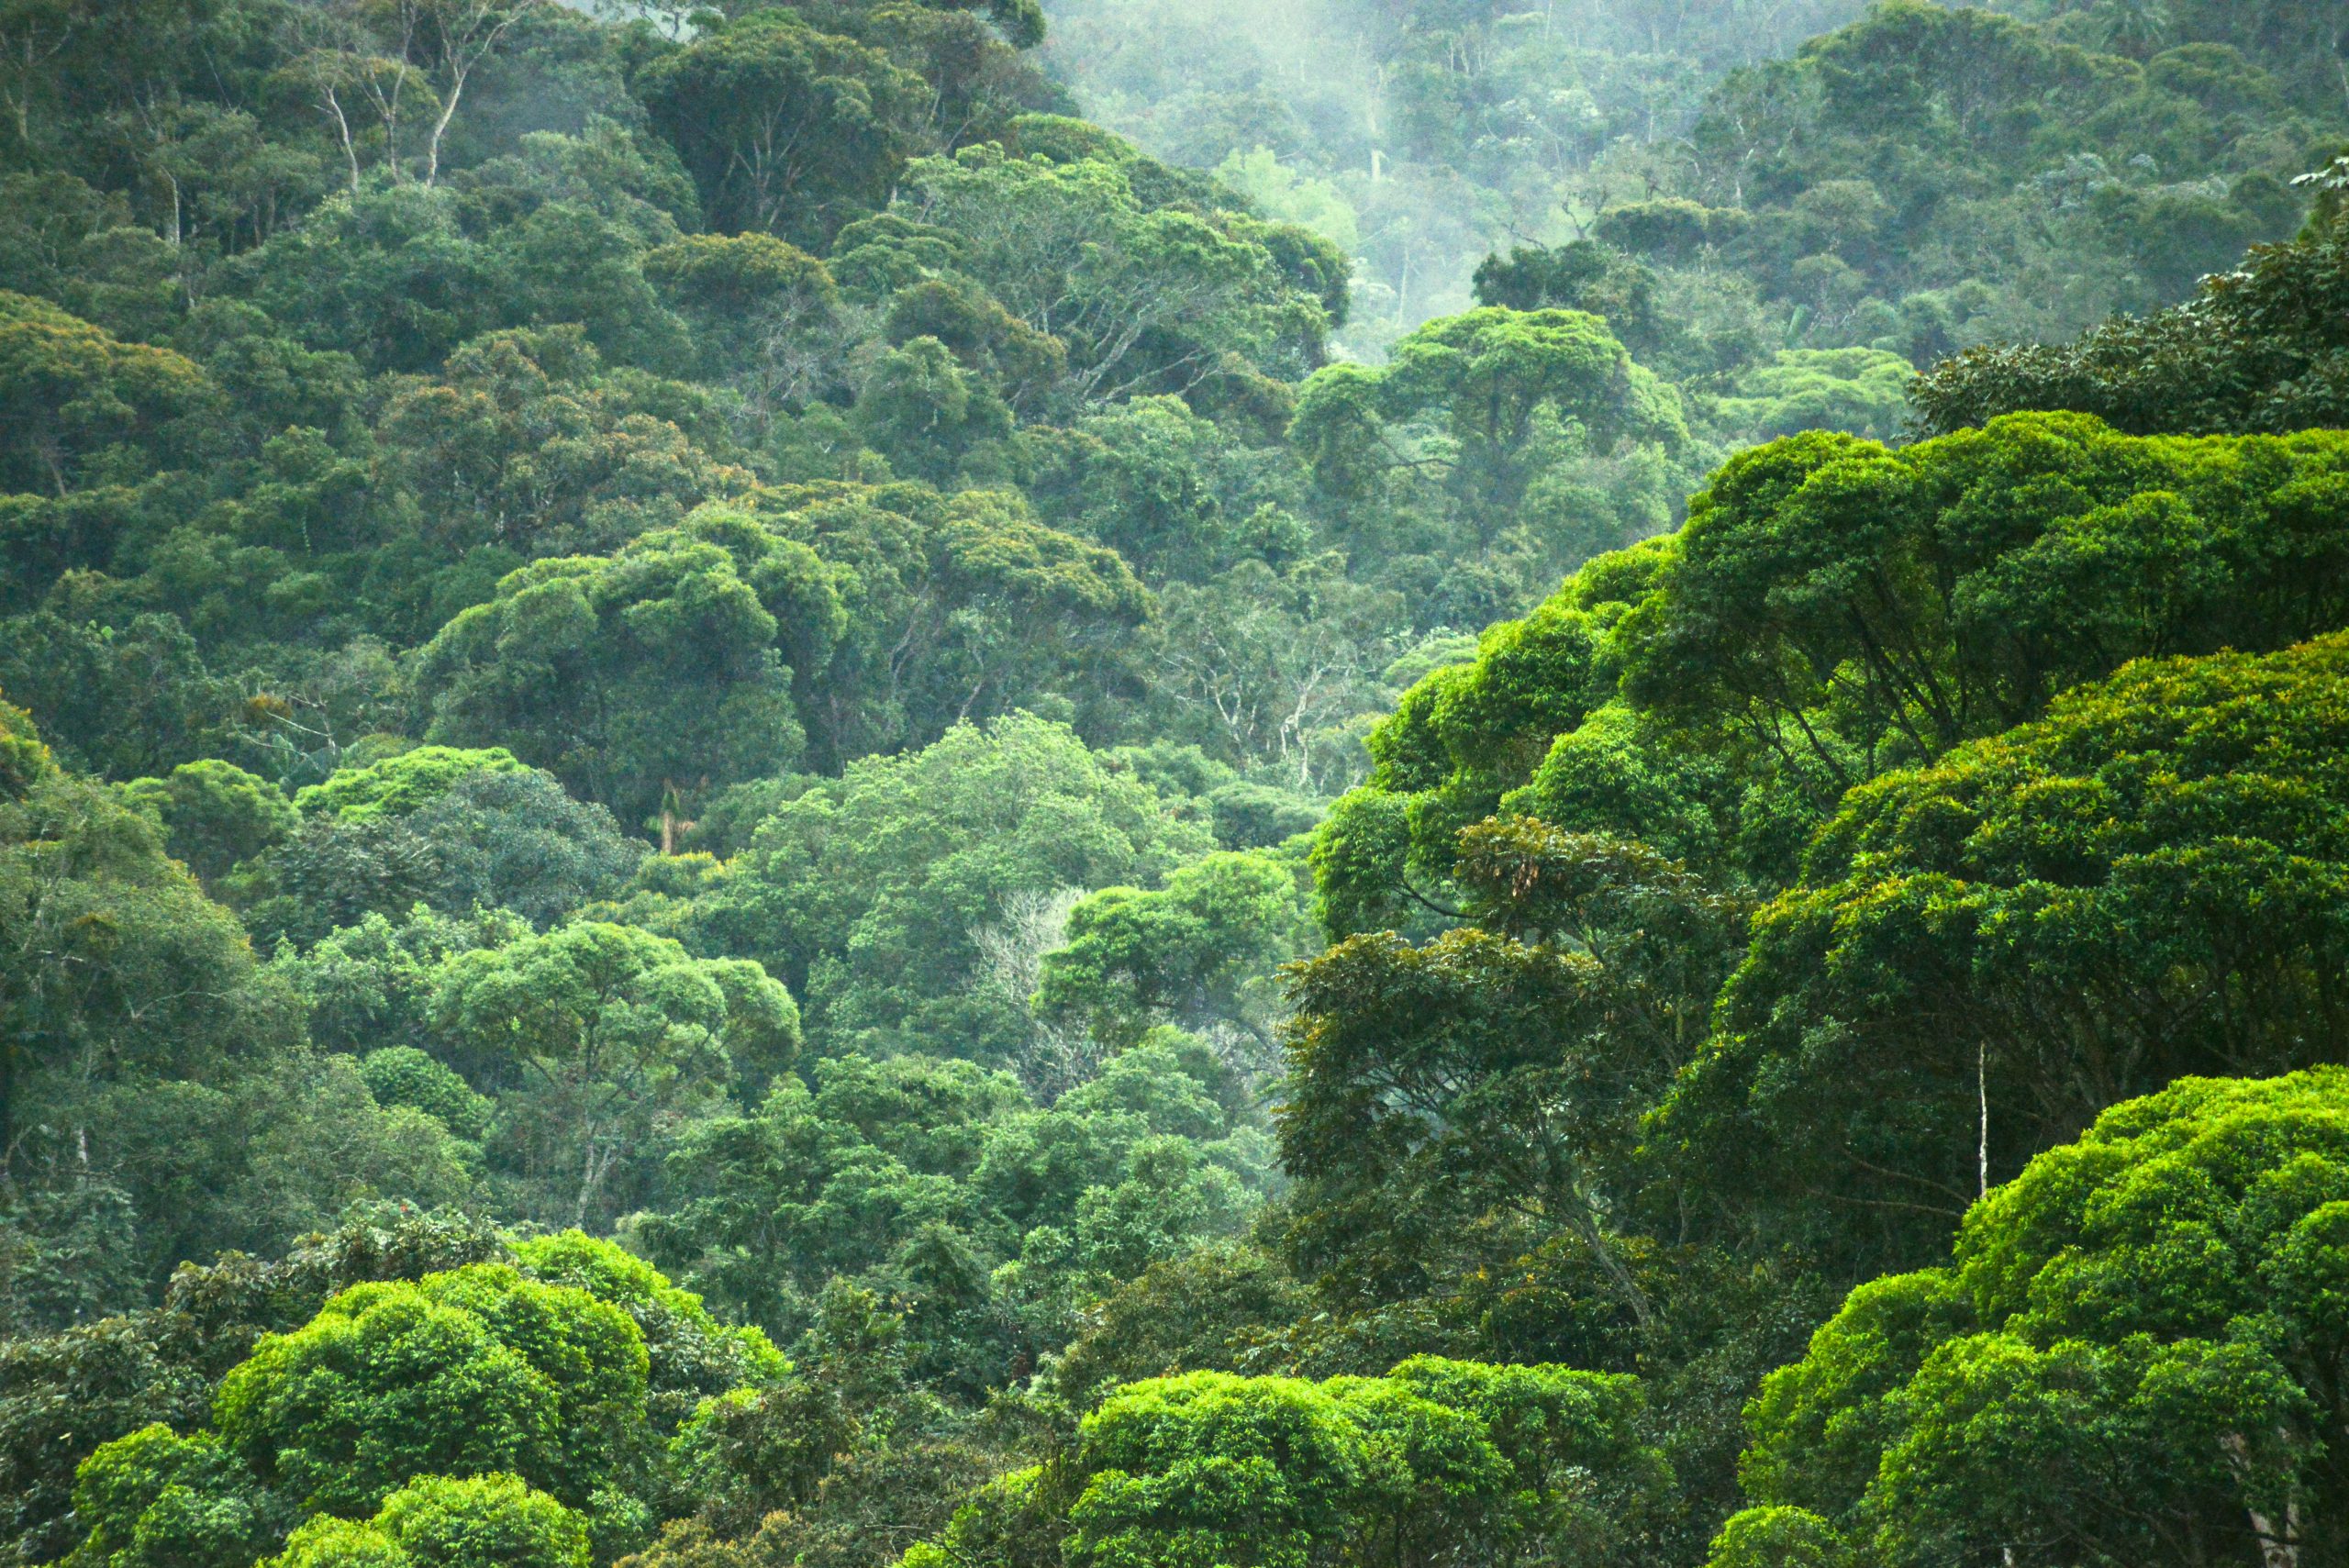 ENTENDA O QUE É REDD: Redução das Emissões por Desmatamento e Degradação  florestal